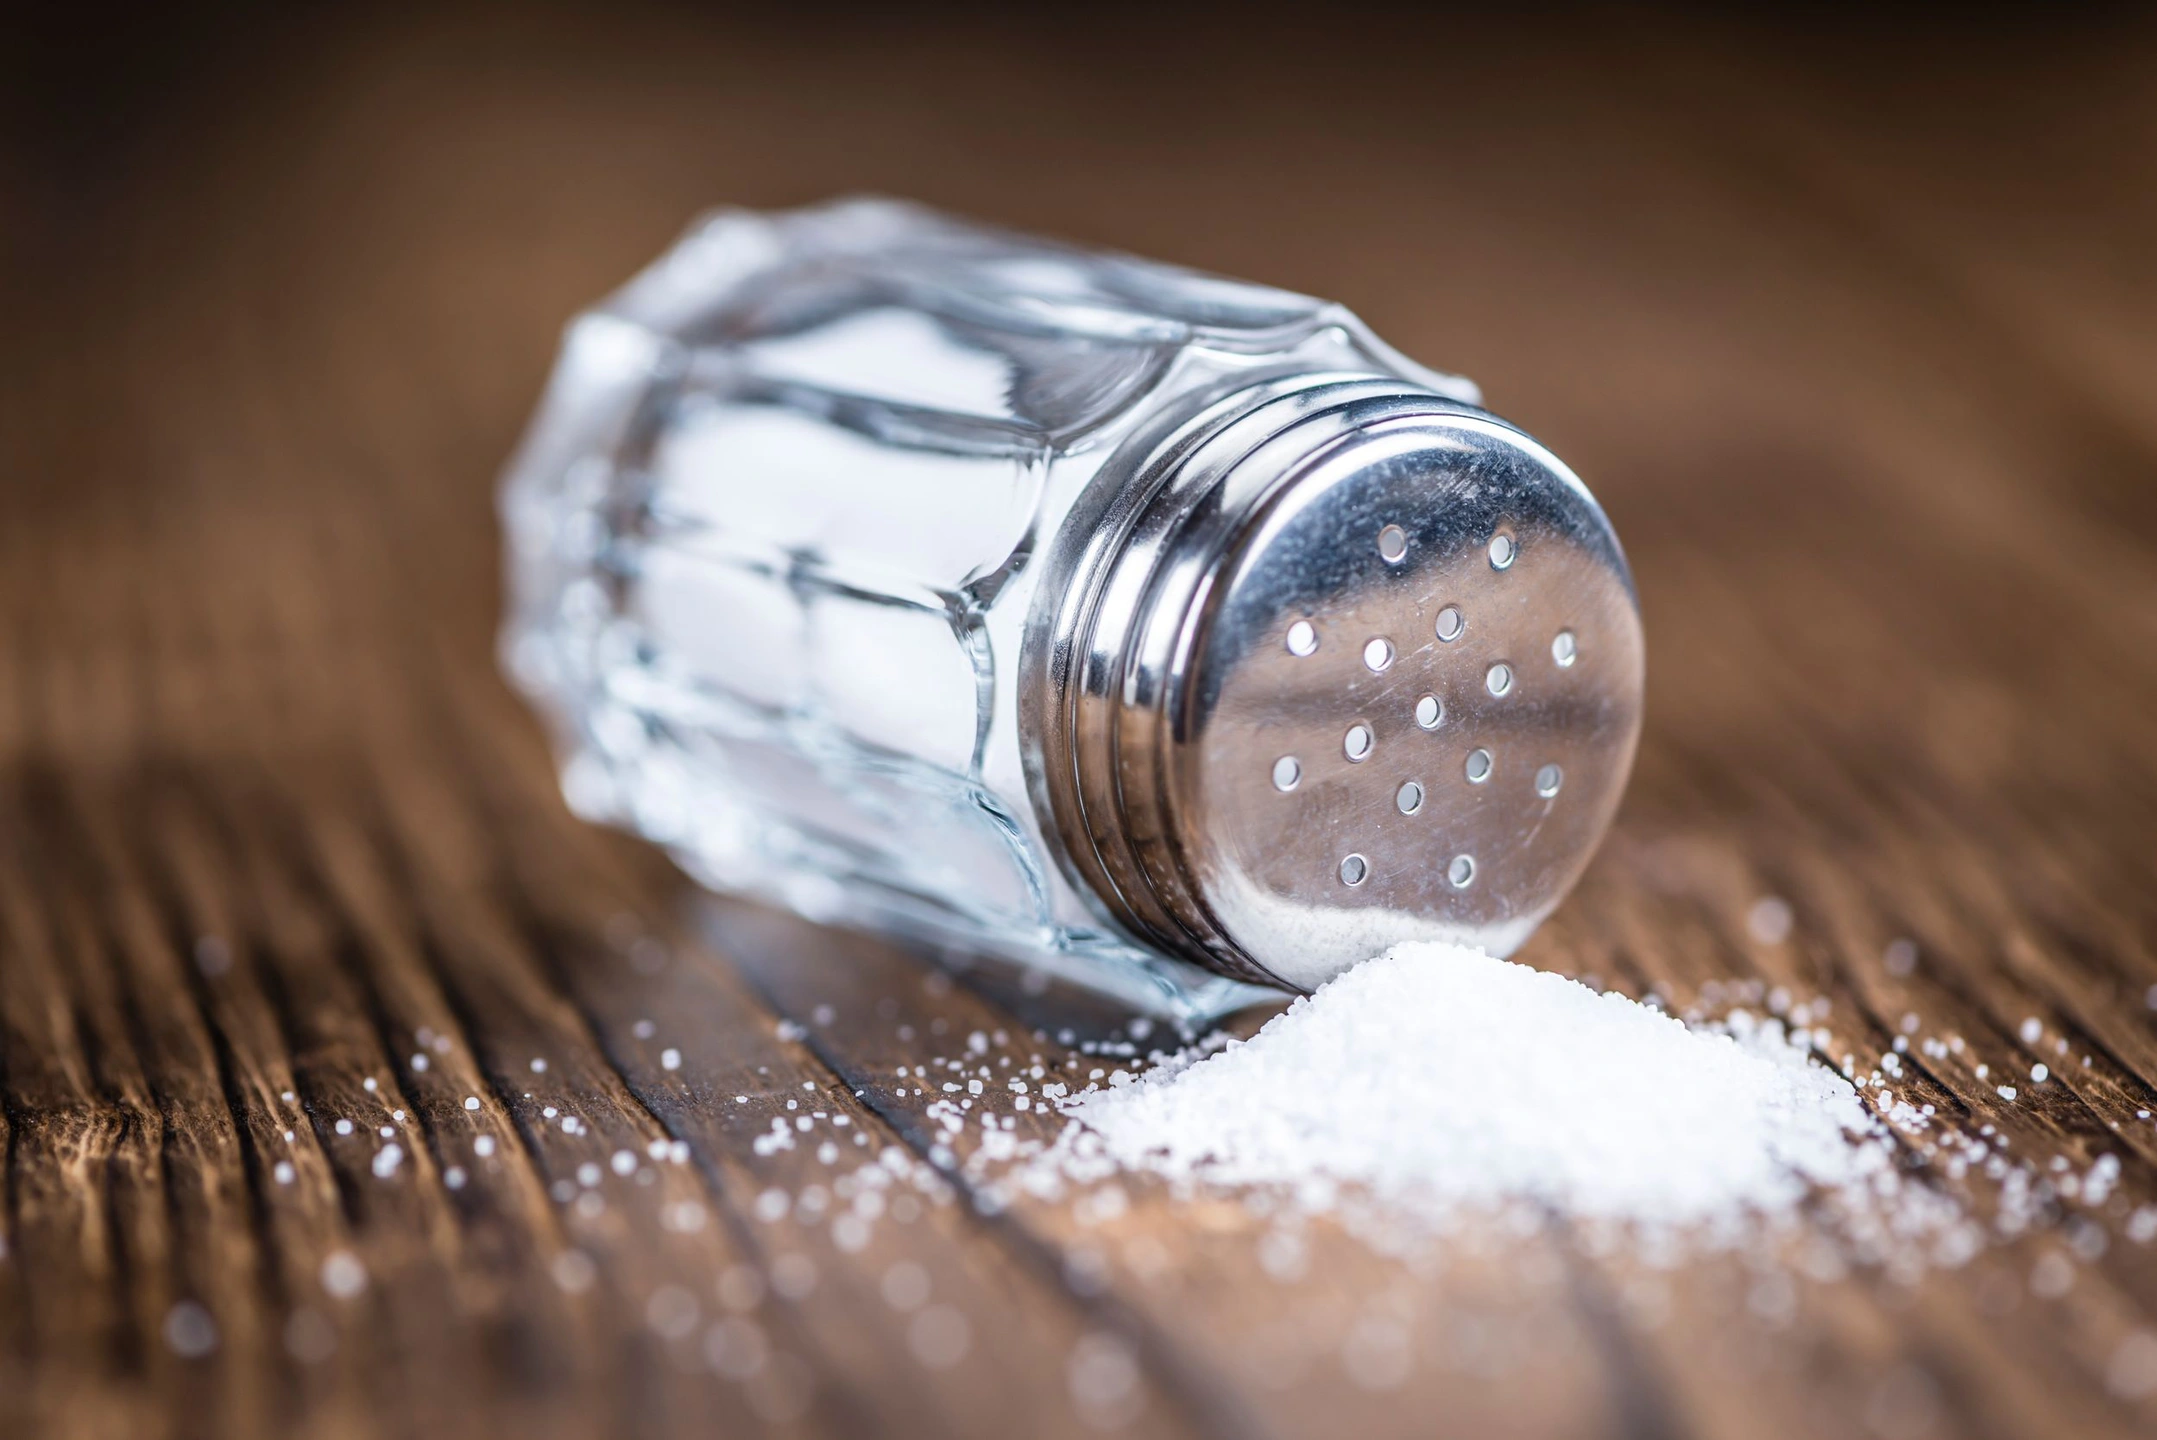 JAMA: злоупотребление солью несёт риск повышенной вероятности смерти